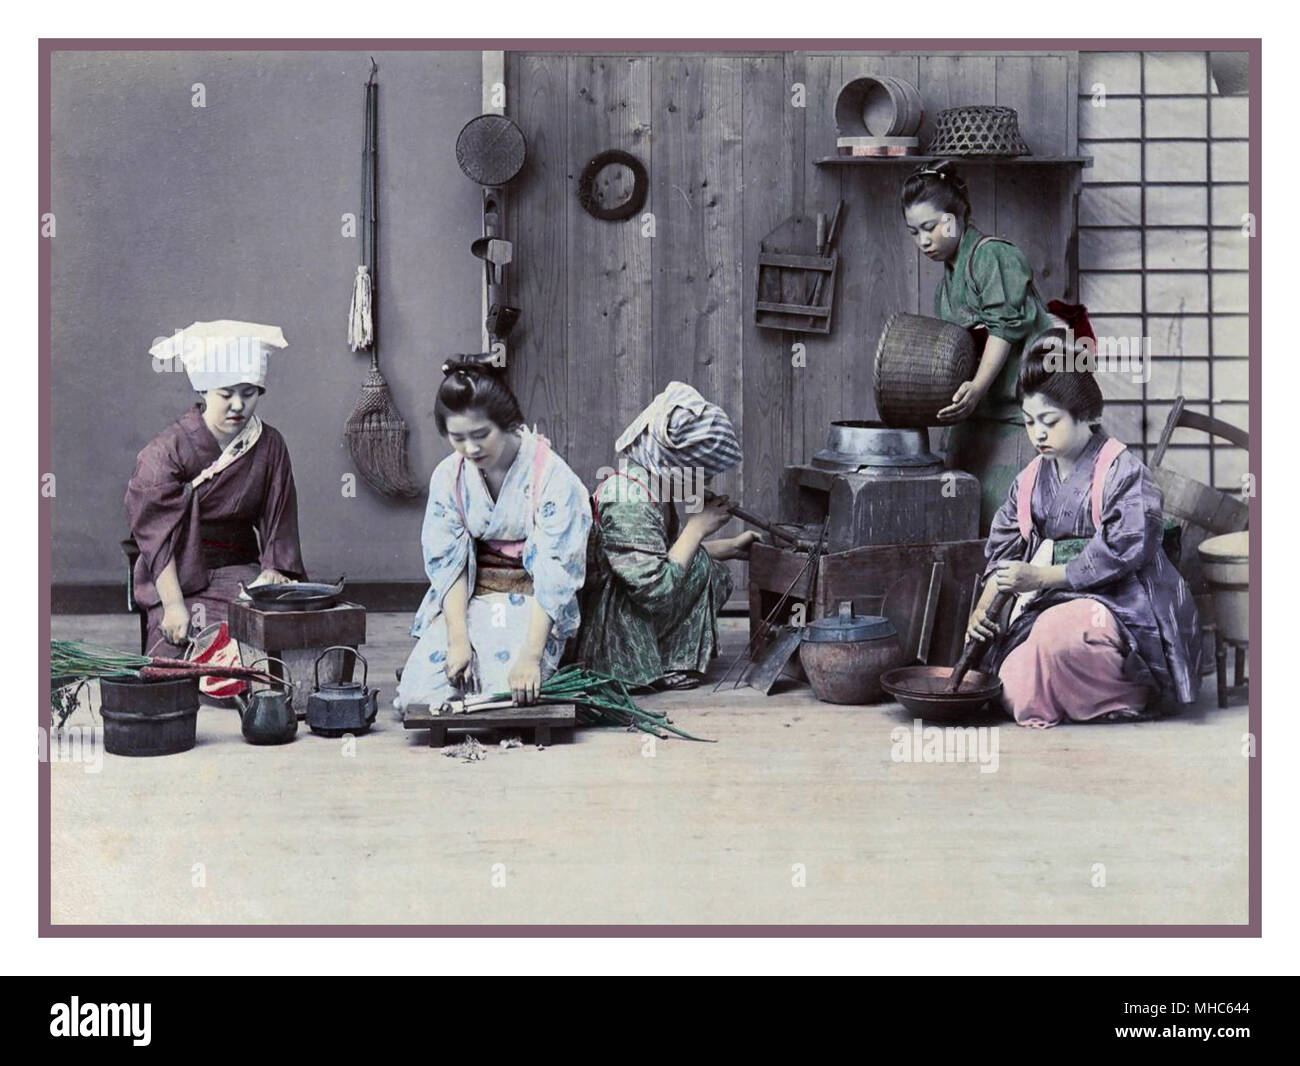 JAPAN Meiji Periode 1880-1890 weibliche Arbeitnehmer in einer Küche für das Abendessen zubereitet. Farblithografie Photochrom bild Technik ca. 1880-1890. Meiji-periode 明治時代 (, Meiji-jidai), auch als der Meiji ära bekannt, ist eine japanische Ära der ab Oktober 23, 1868, 30. Juli 1912. Dieser Zeitraum stellt die erste Hälfte des Reiches von Japan während der japanischen Gesellschaft von einer isolierten feudalen Gesellschaft in seiner modernen Form verschoben. Stockfoto